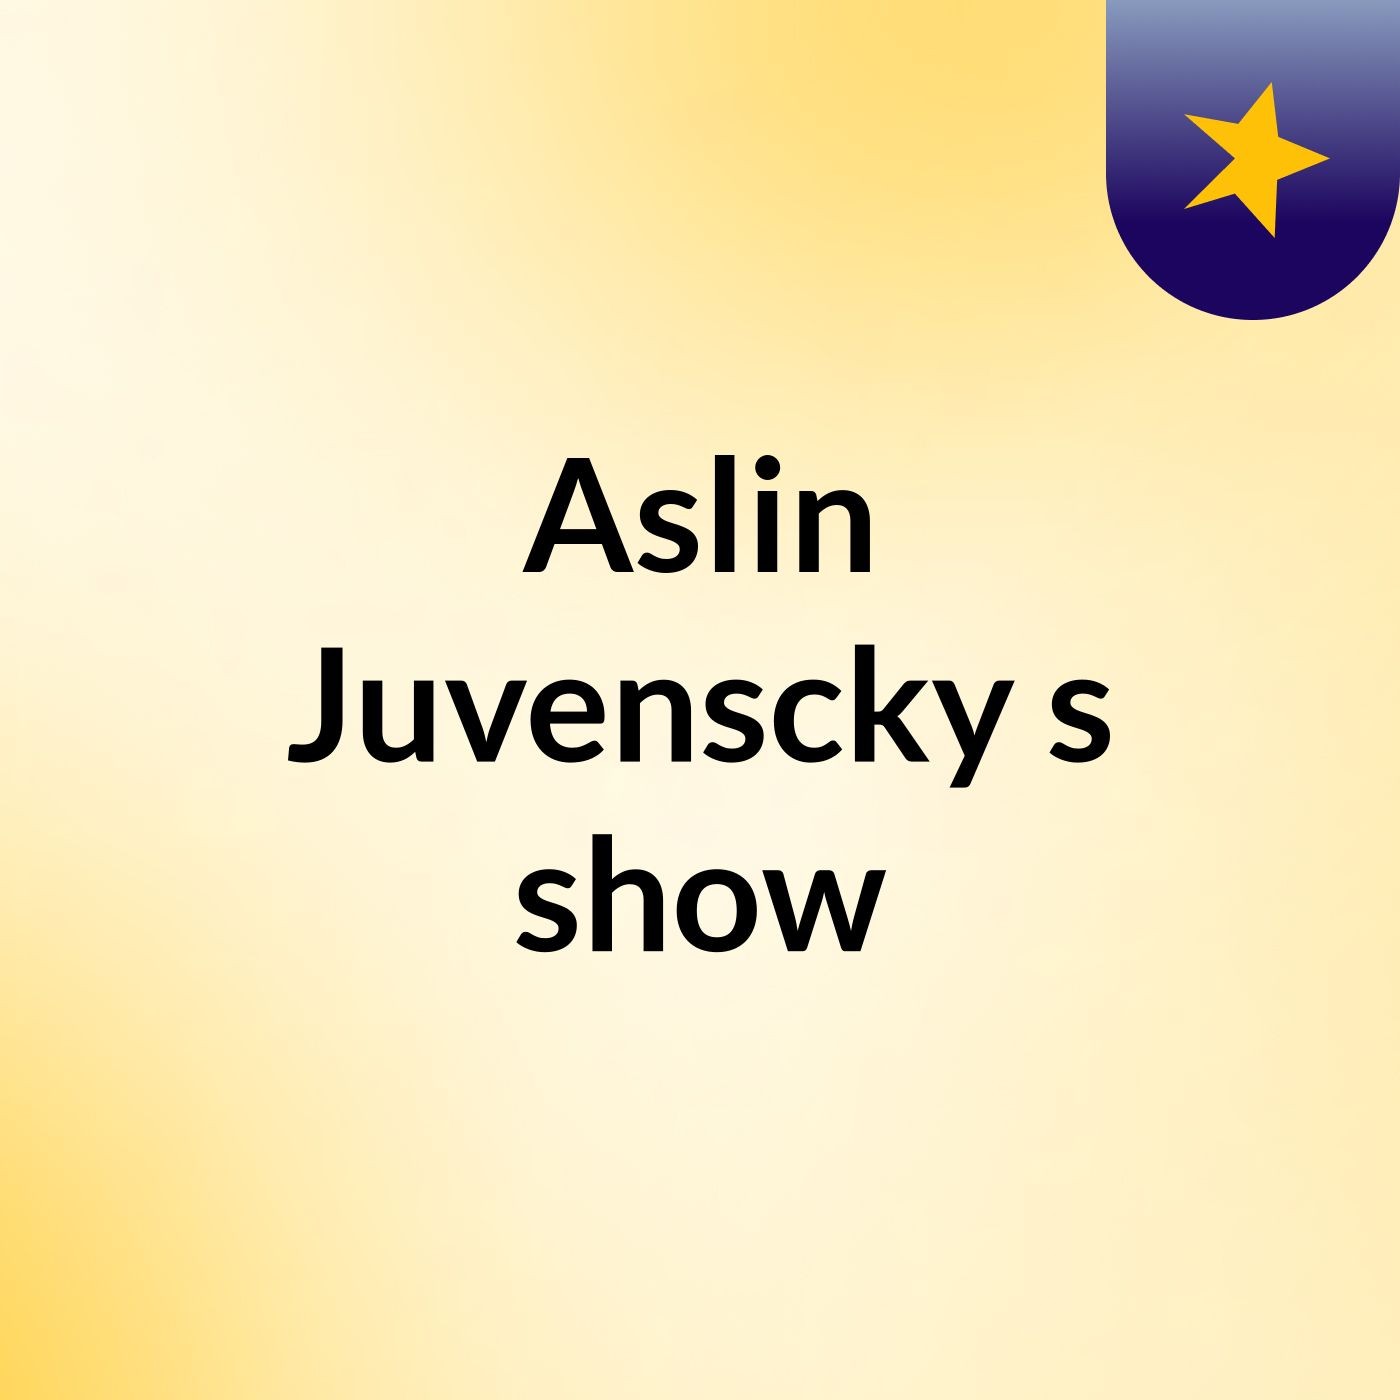 Aslin Juvenscky's show